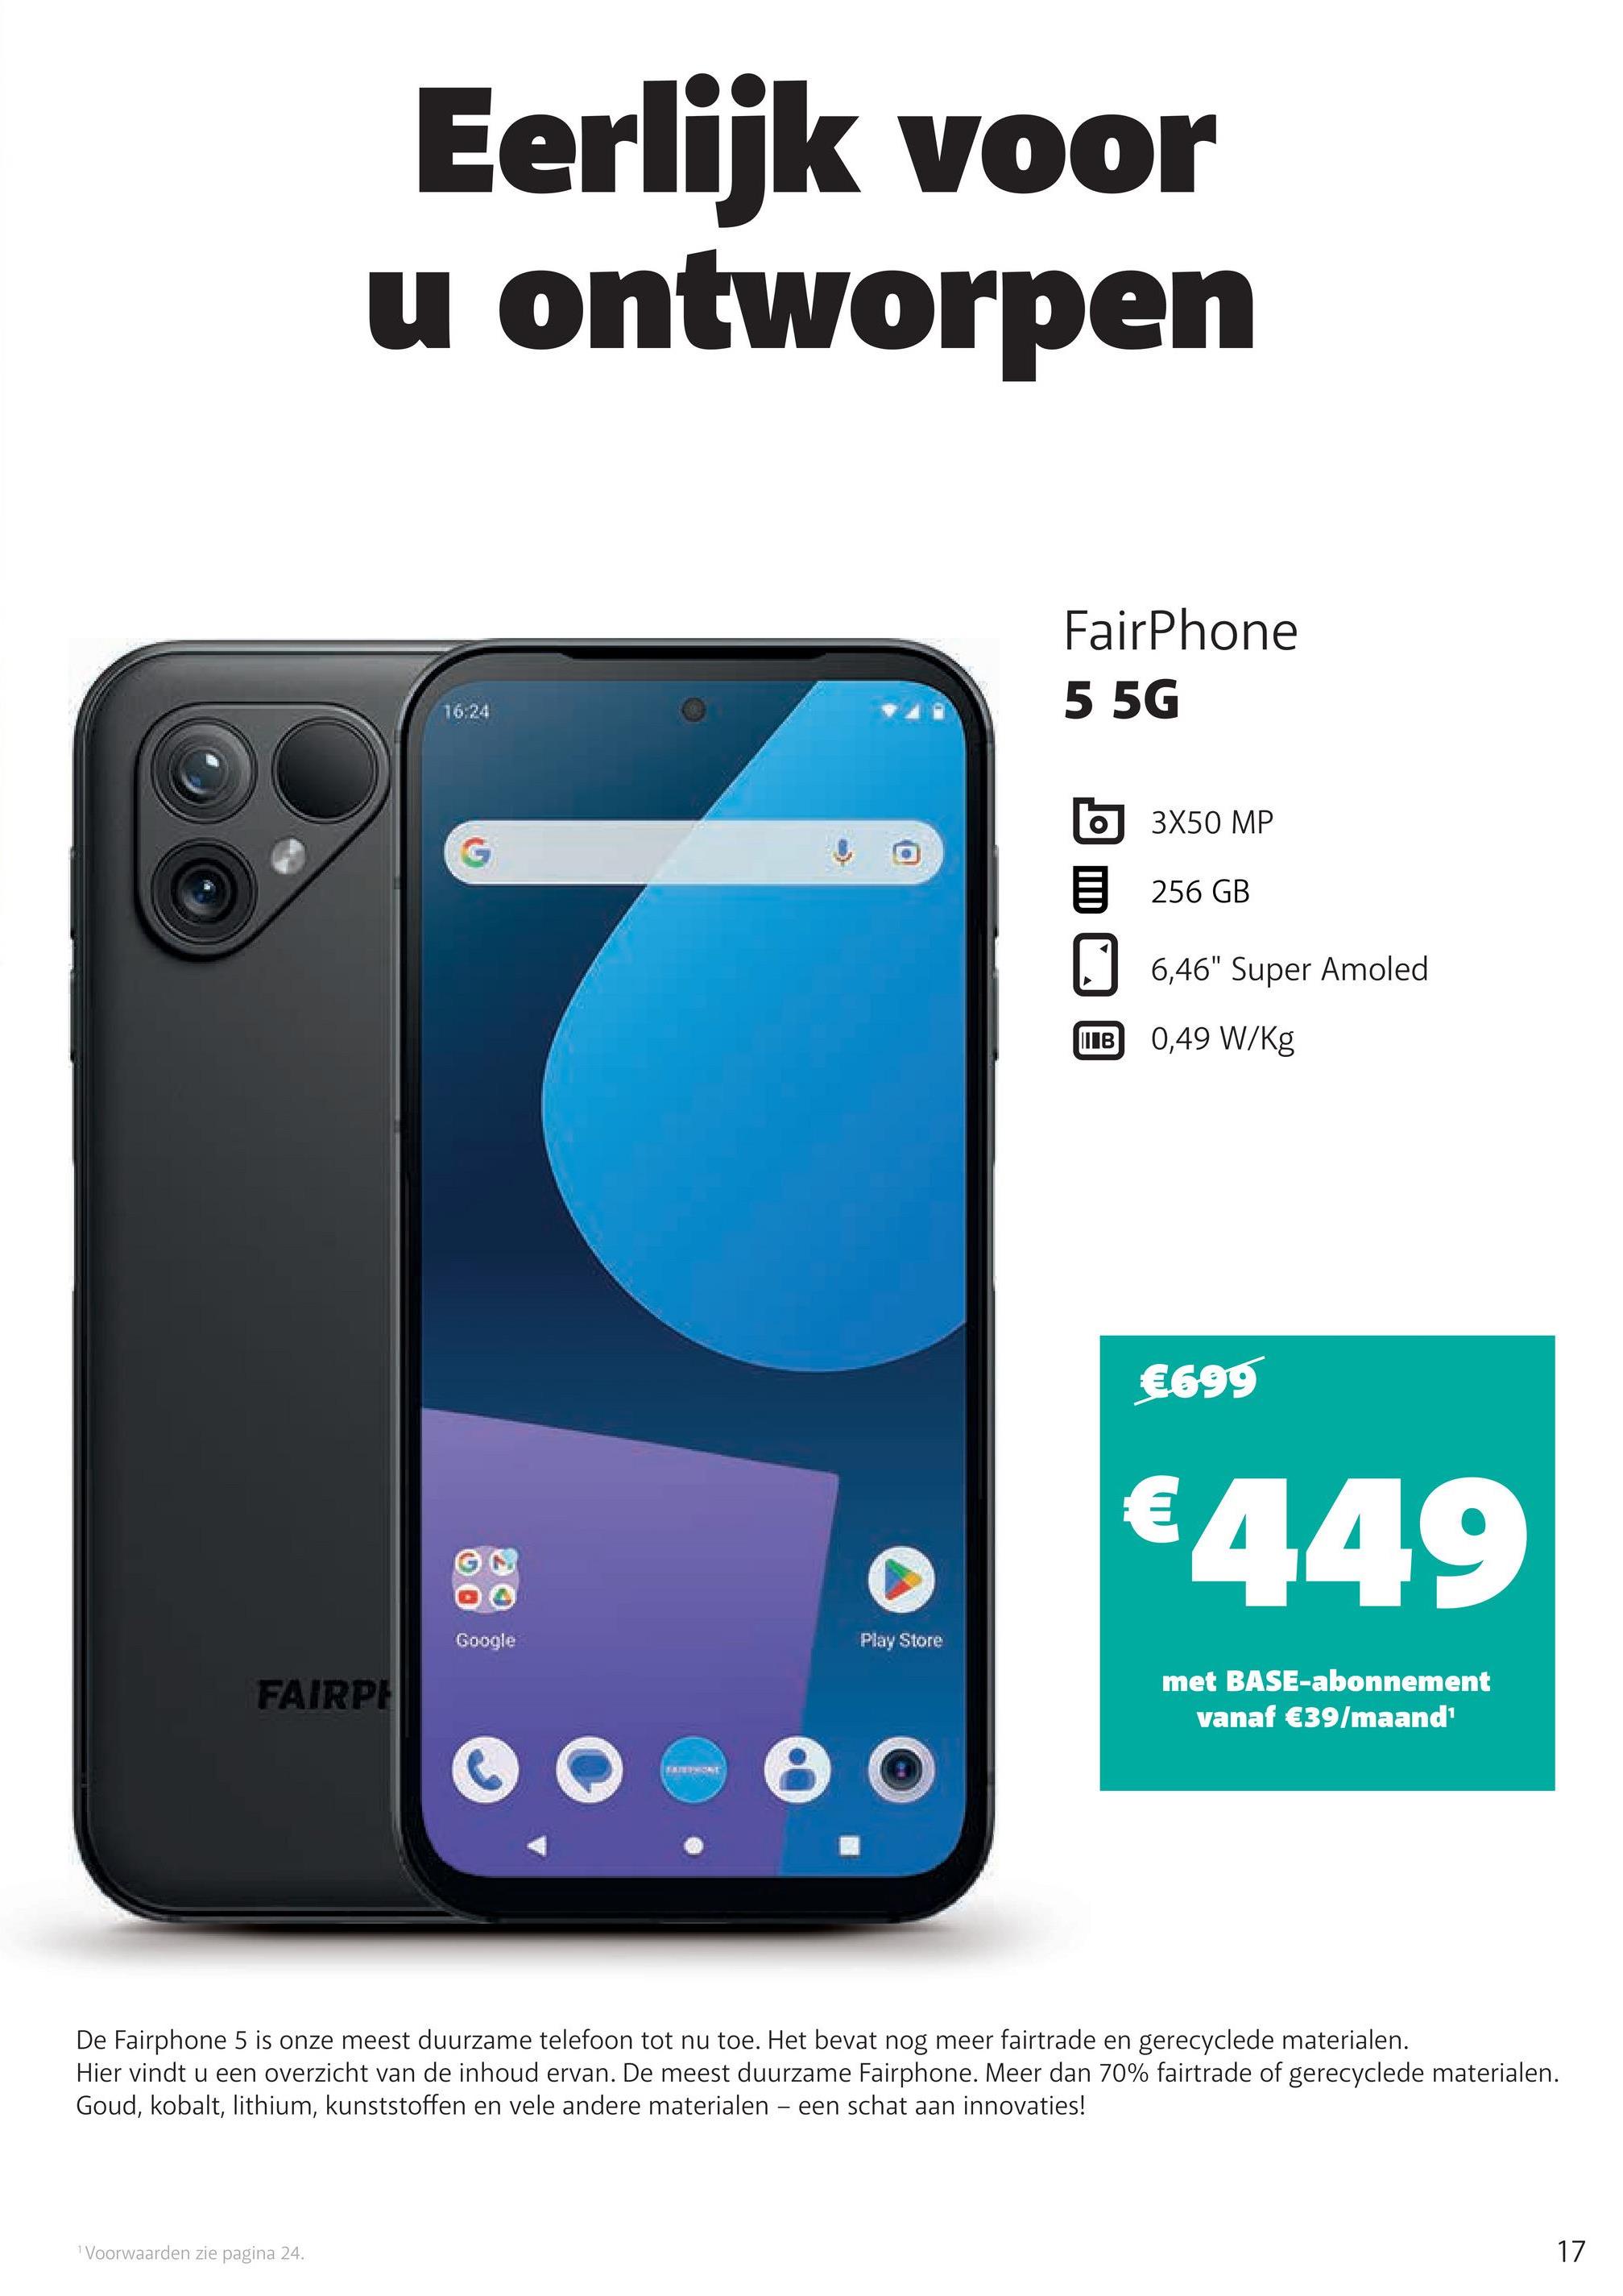 Eerlijk voor
u ontworpen
16:24
Google
Play Store
FAIRPH
FairPhone
5 5G
3X50 MP
256 GB
6,46" Super Amoled
IIIB
0,49 W/kg
€699
€449
met BASE-abonnement
vanaf €39/maand'
De Fairphone 5 is onze meest duurzame telefoon tot nu toe. Het bevat nog meer fairtrade en gerecyclede materialen.
Hier vindt u een overzicht van de inhoud ervan. De meest duurzame Fairphone. Meer dan 70% fairtrade of gerecyclede materialen.
Goud, kobalt, lithium, kunststoffen en vele andere materialen - een schat aan innovaties!
1 Voorwaarden zie pagina 24.
17